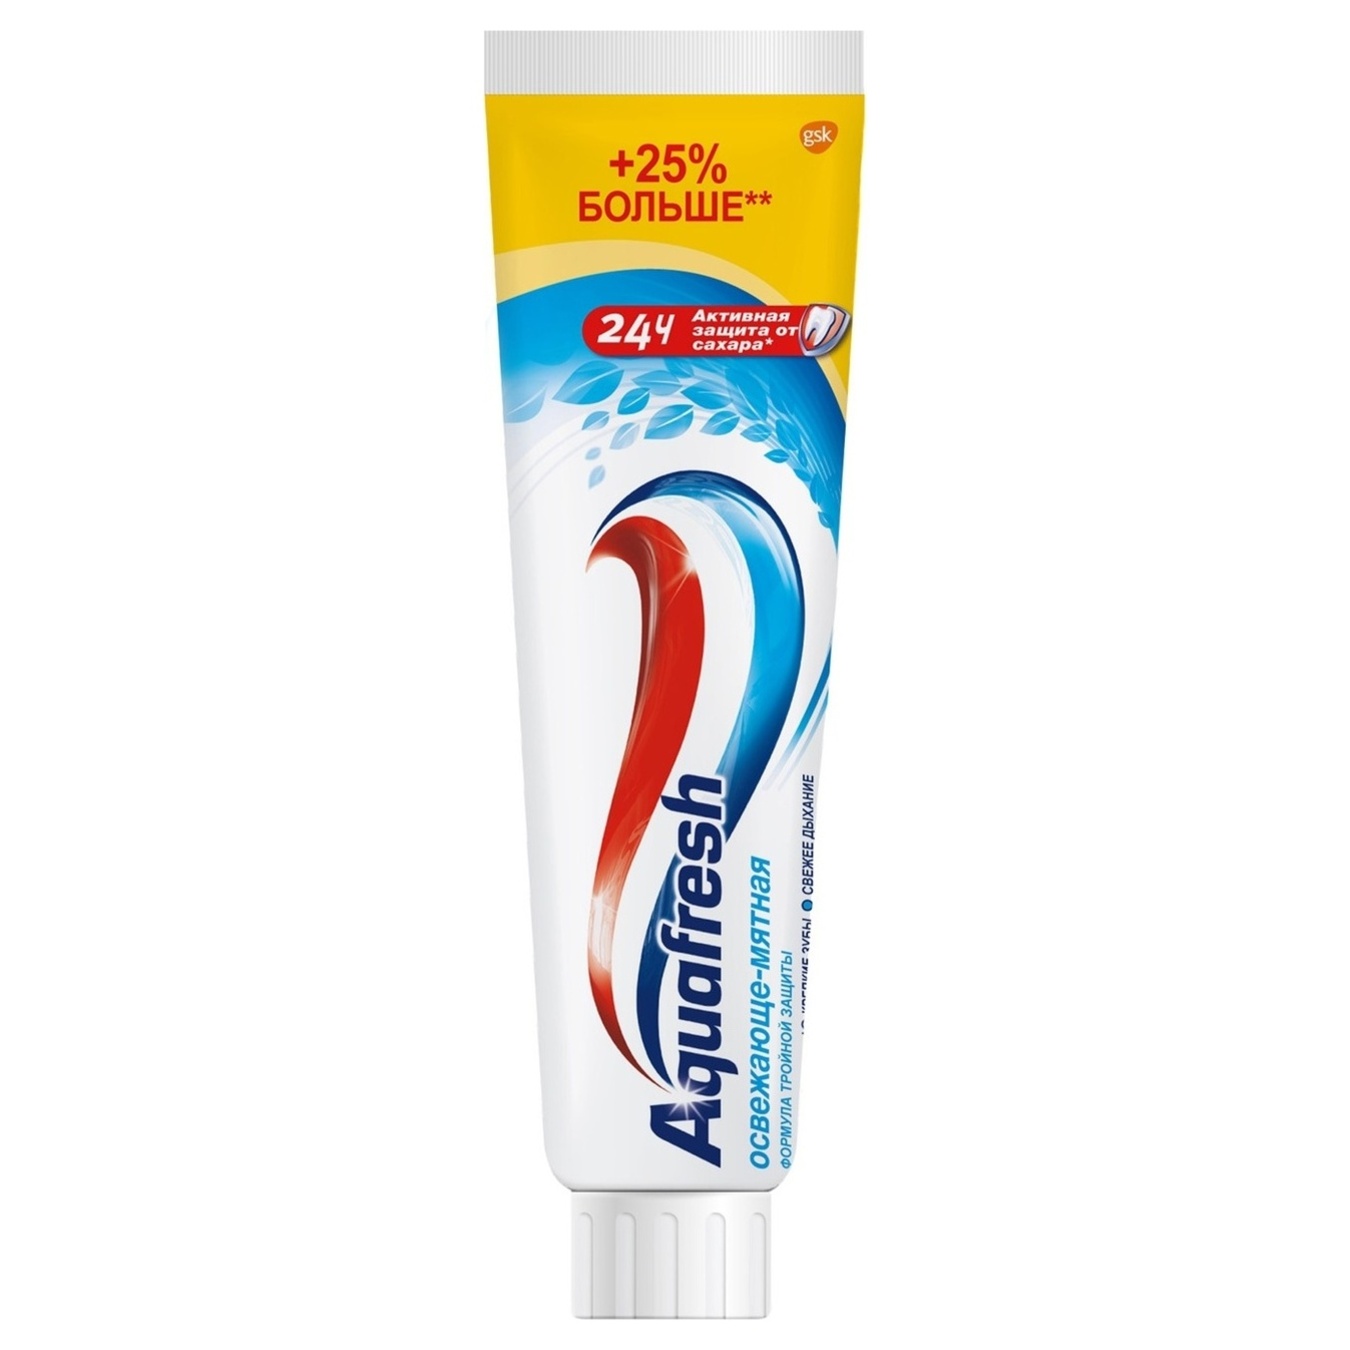 Зубная паста Aquafresh освежающе-мятная 125мл